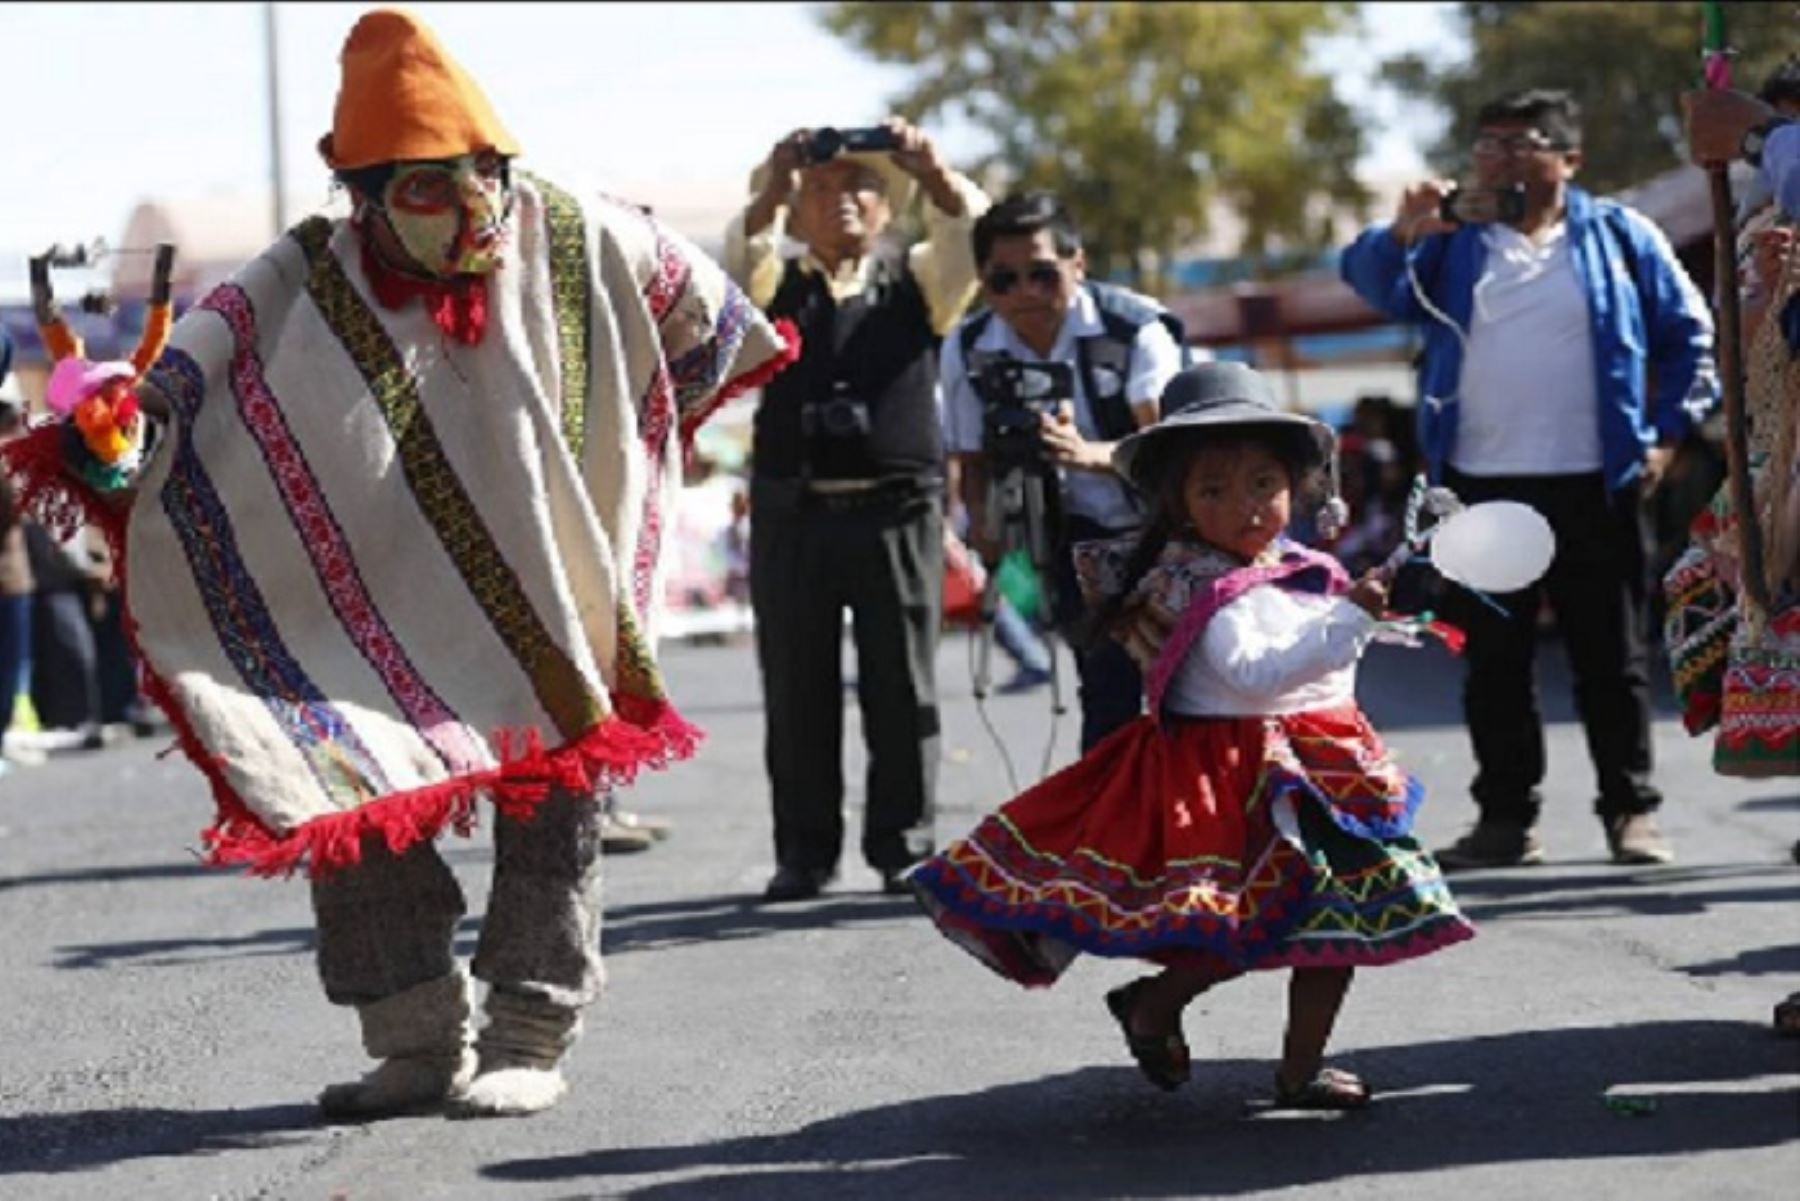 Hoy se realiza el décimo Pasacalle Regional 2018, con motivo del 478° aniversario de fundación española de la ciudad de Arequipa, en la que se espera la participación de más de 2,000 pobladores de las ocho provincias, quienes bailarán las danzas típicas de su región. ANDINA/Difusión